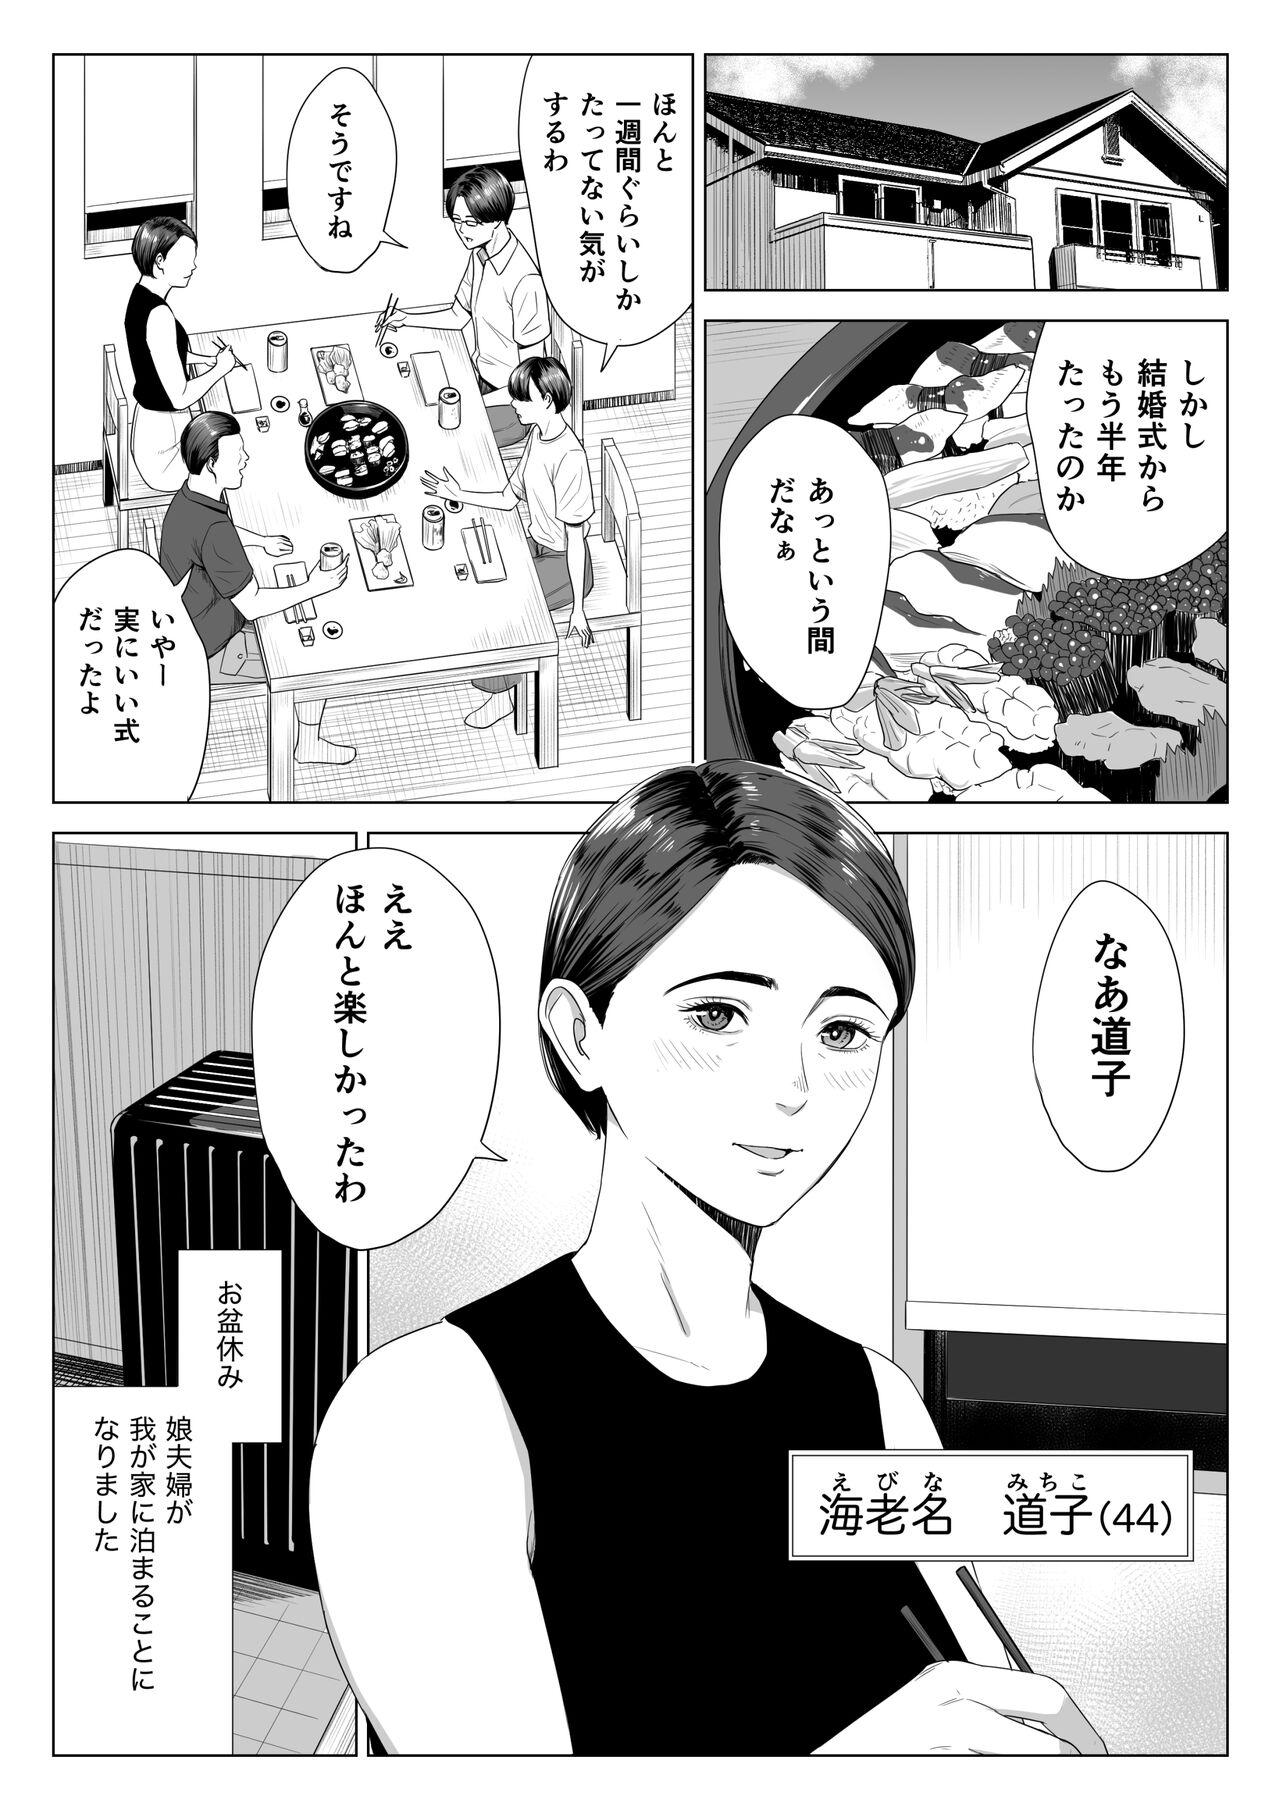 Friend Gibo no tsukaeru karada. - Original Fitness - Page 2